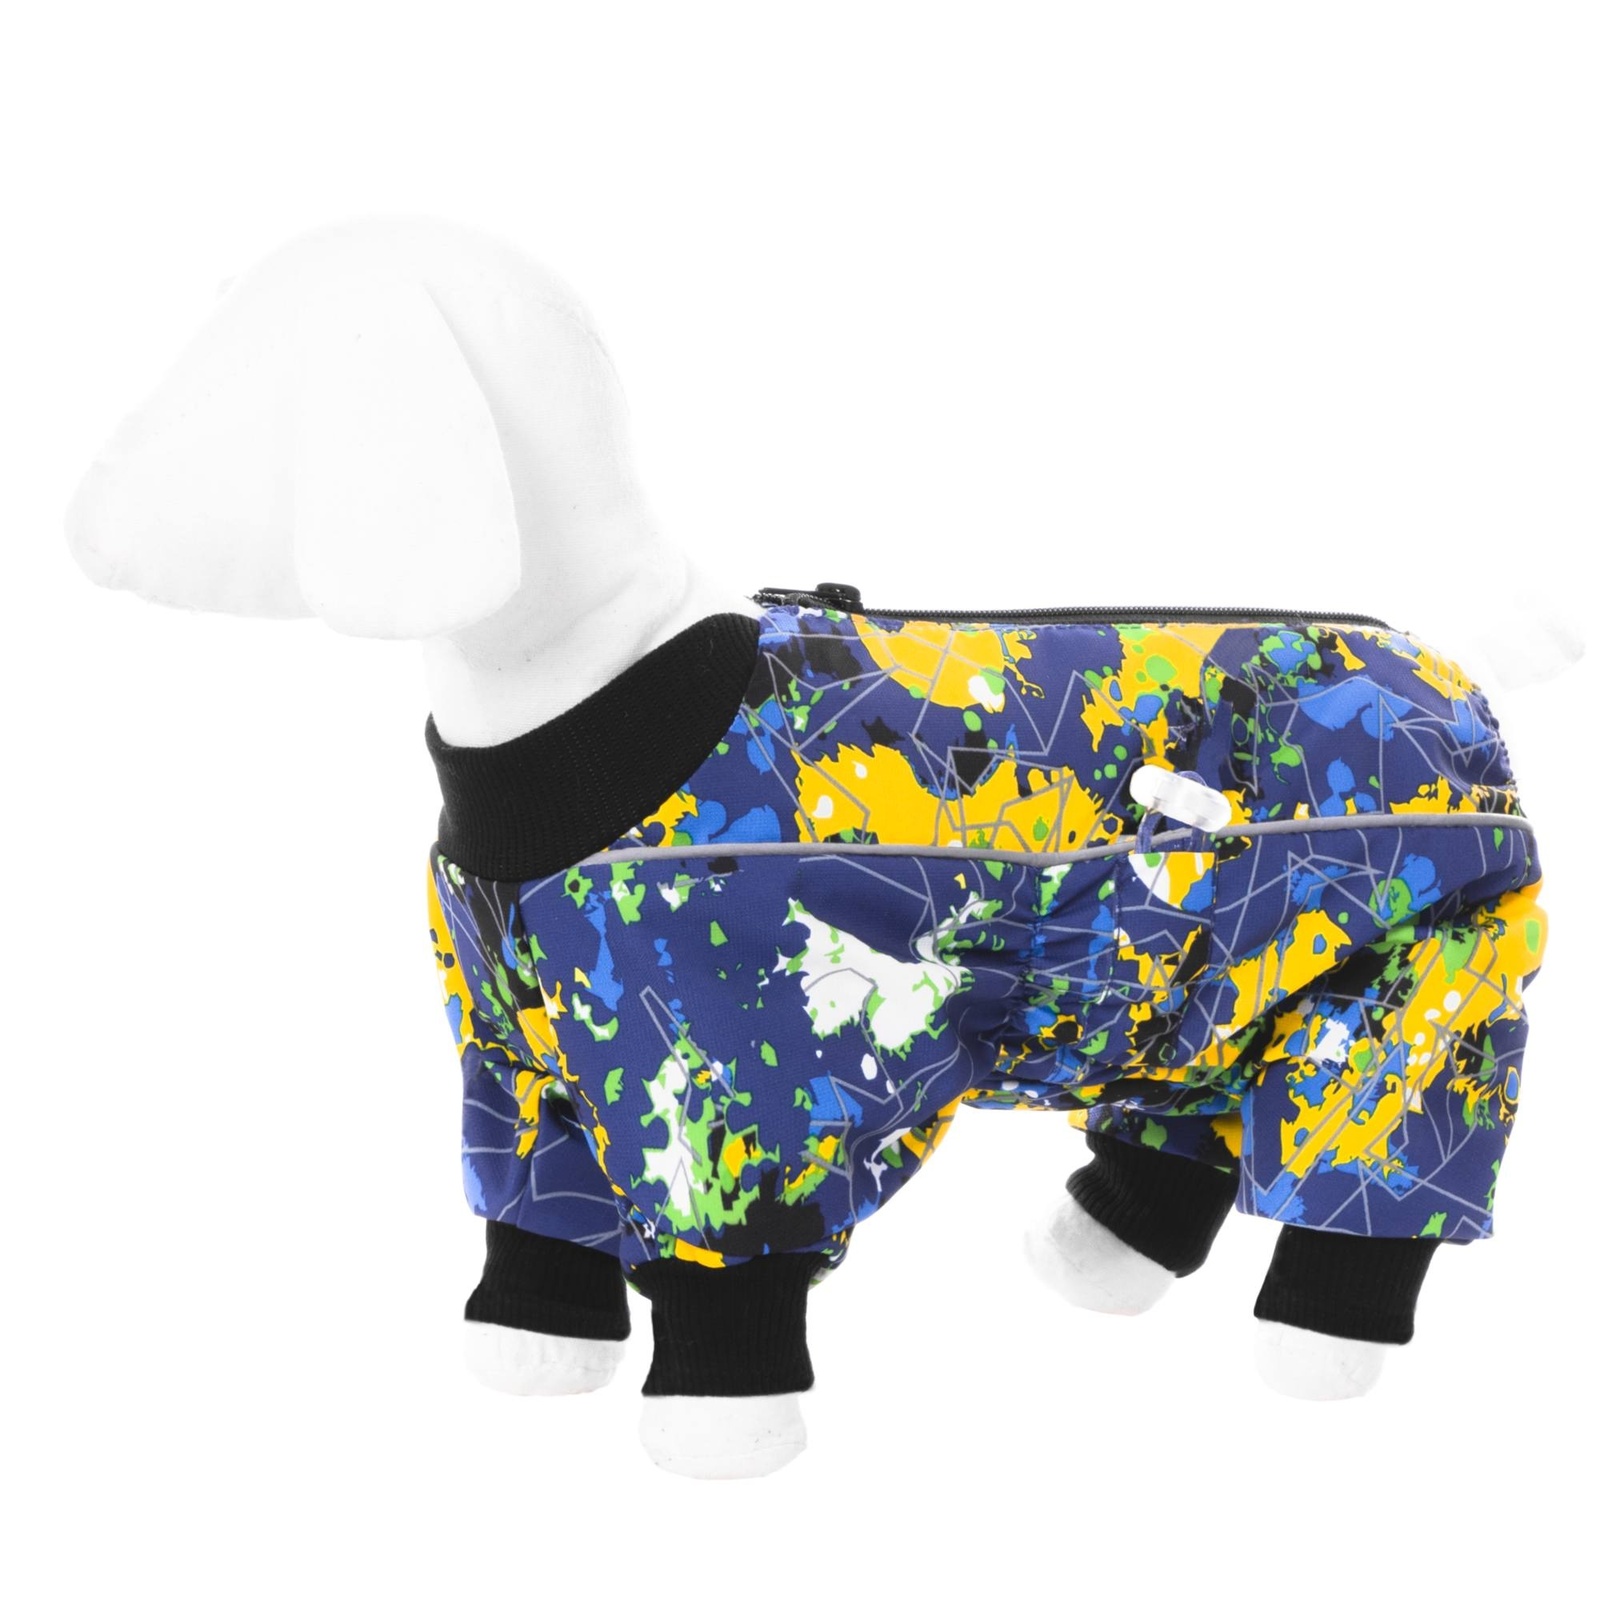 Yami-Yami одежда Yami-Yami одежда комбинезон для собак малых пород, на флисе с рисунком краски (L) yami yami одежда yami yami одежда комбинезон для собак малых пород на флисе с рисунком краски m